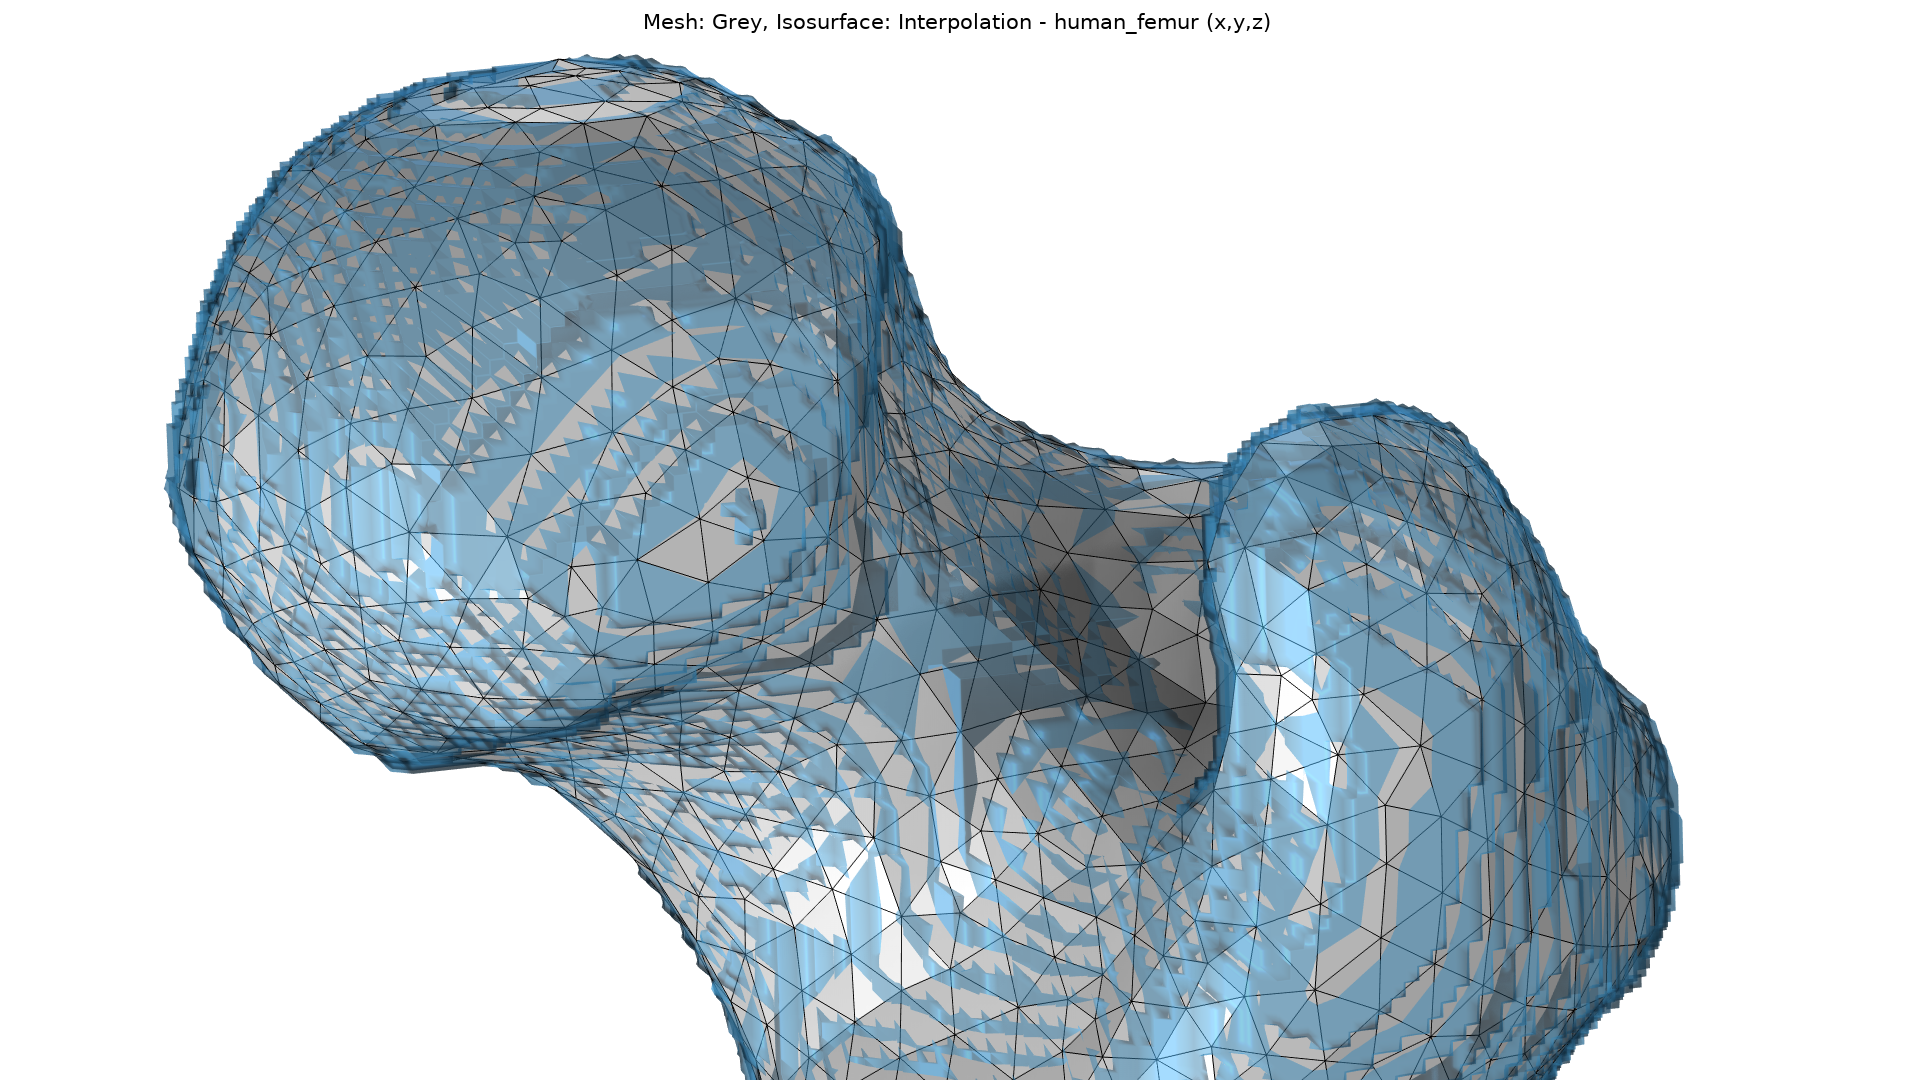 股骨顶部特写图。在这里，我们可以比较生成的网格(灰色)和导入的数据(蓝色)。